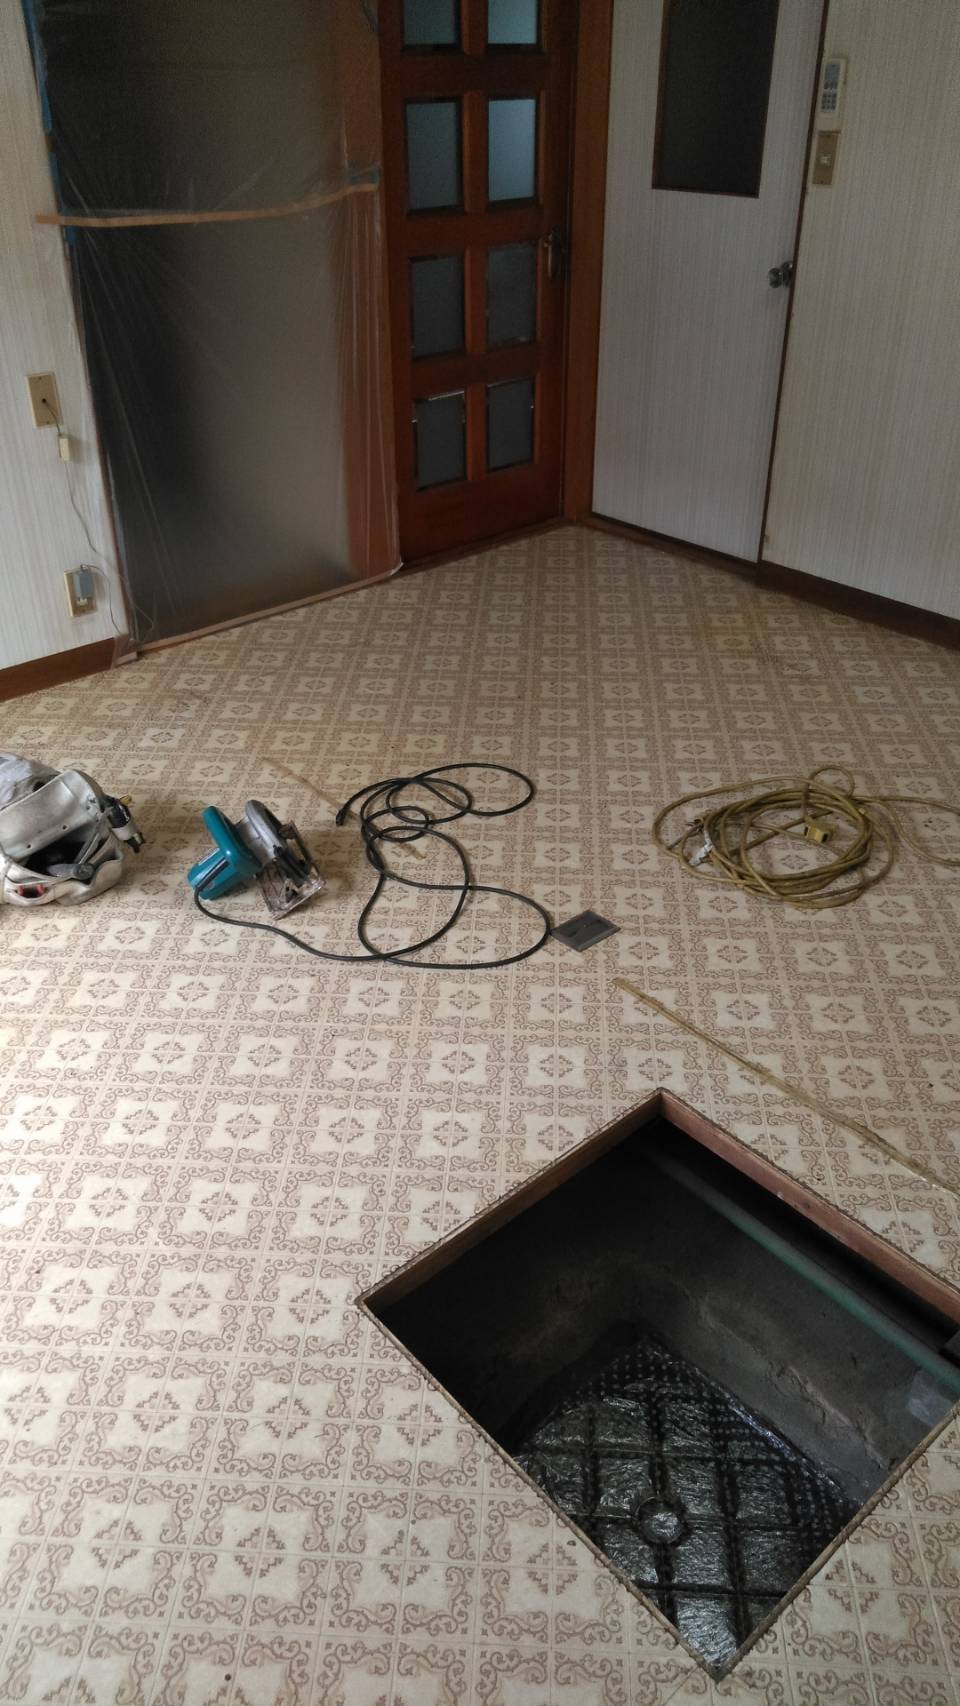 春日井市でキッチンの床貼り替え工事を行いました。